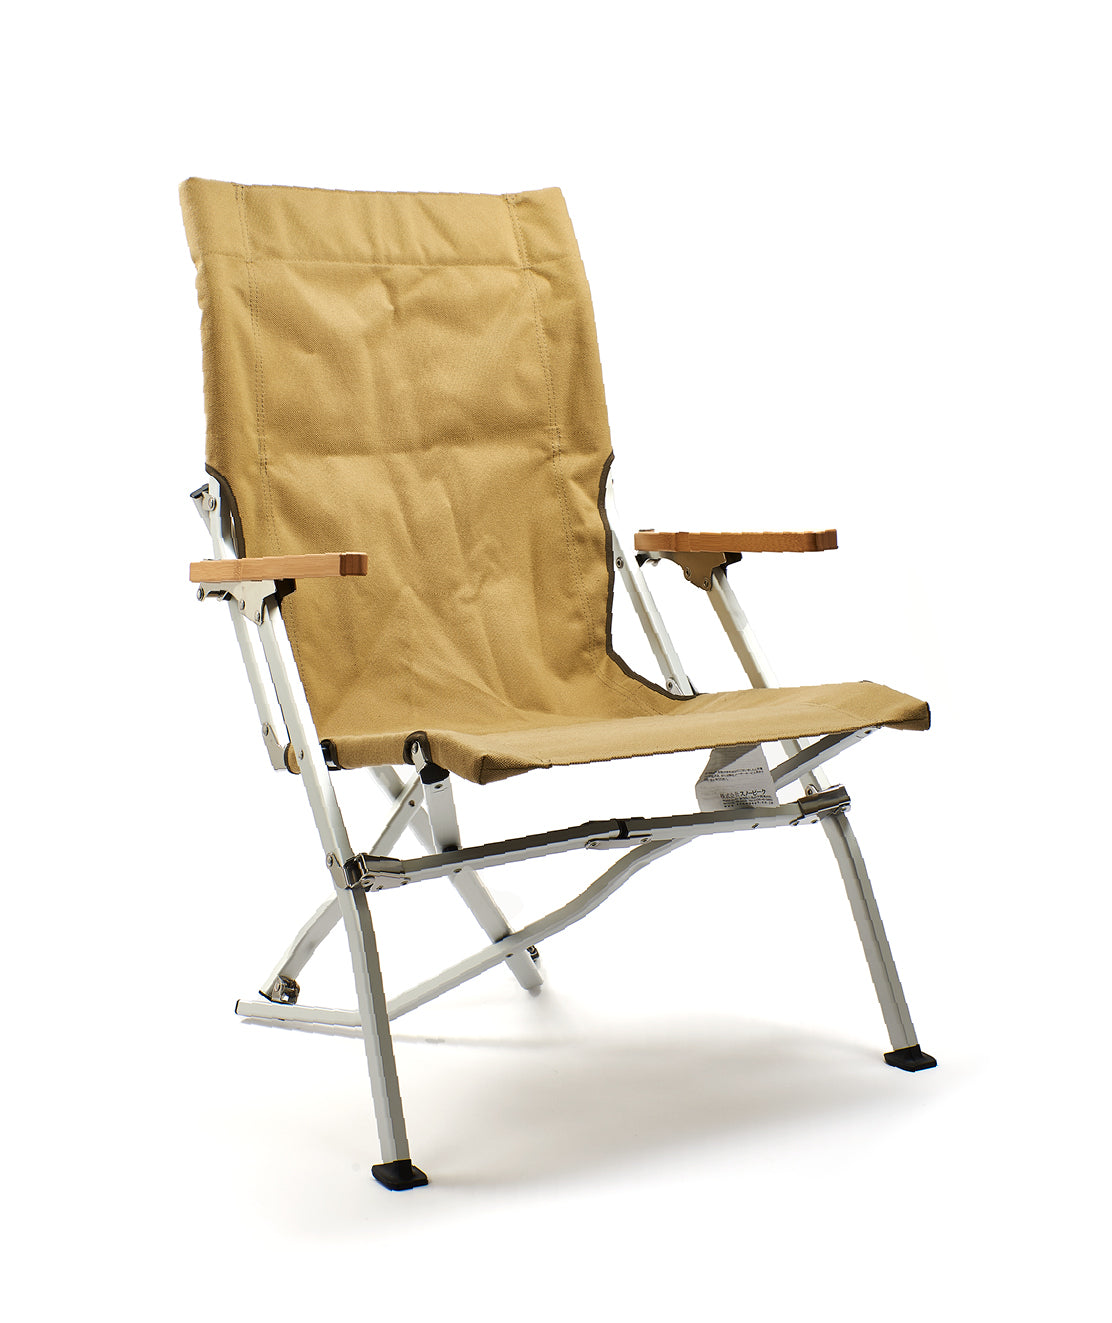 30 One Size khaki Low Chair